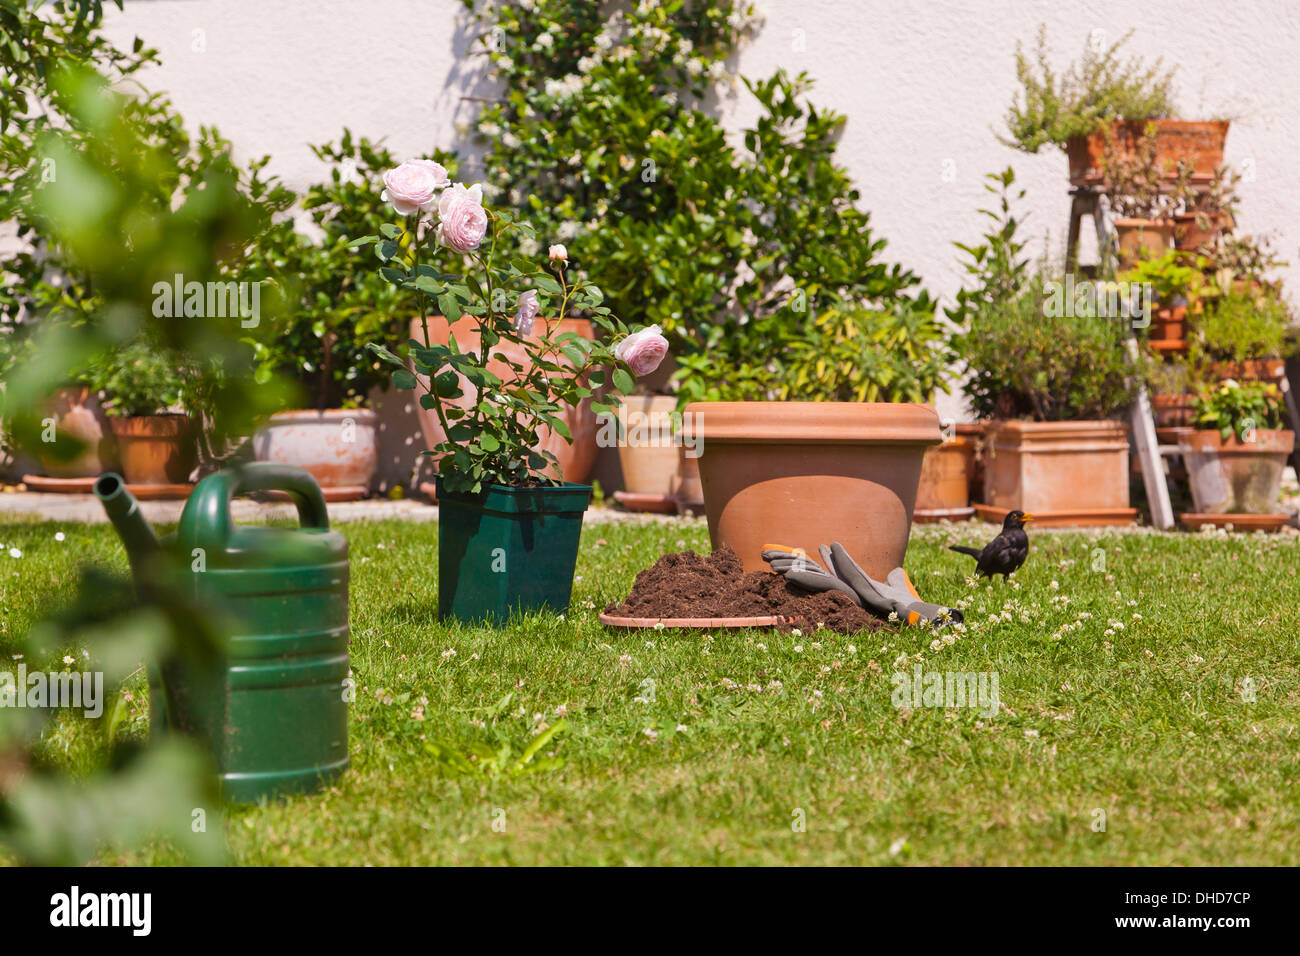 Deutschland, Stuttgart, Blumentöpfe und Englisch stieg auf Rasen im Garten  Stockfotografie - Alamy